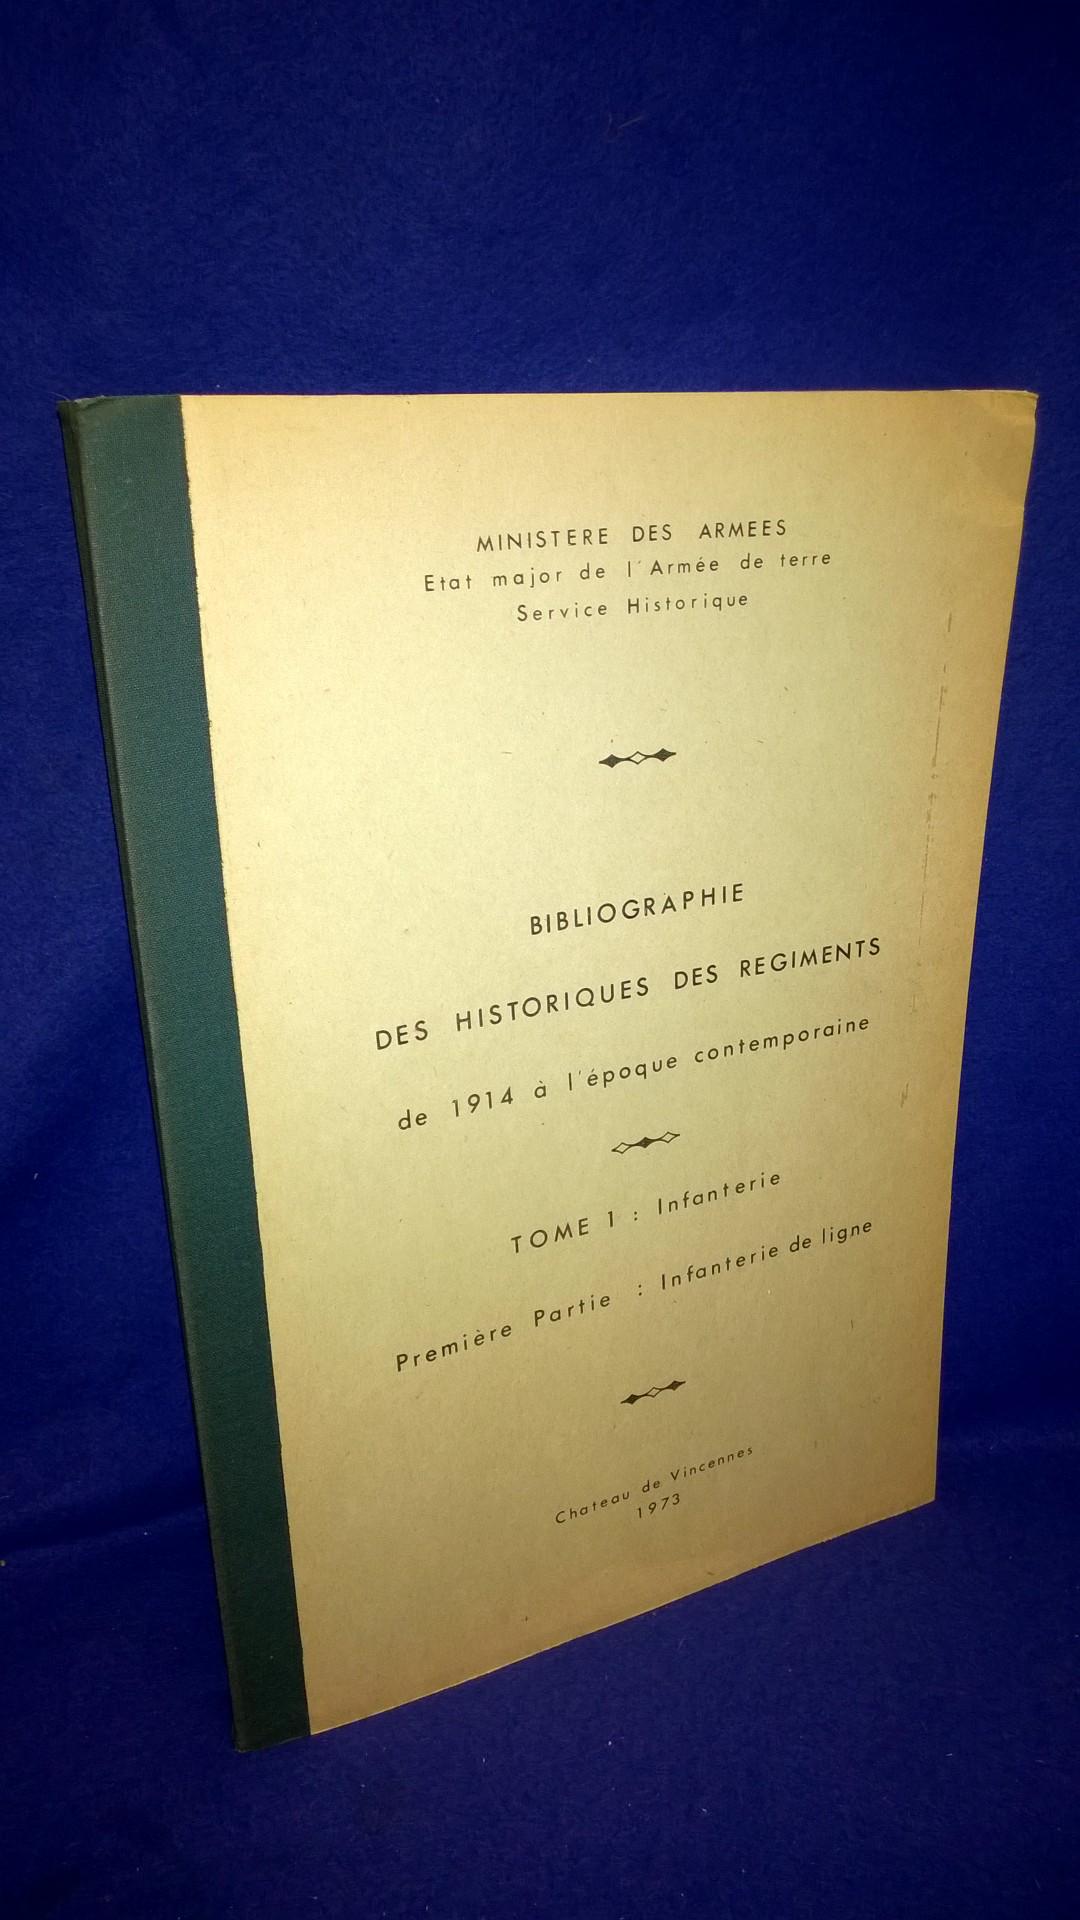 Bibliographie des historiques des régiments, de 1914 à l'époque contemporaine. TOME 1: Infanterie. Premiere Partie. Infanterie de ligne.